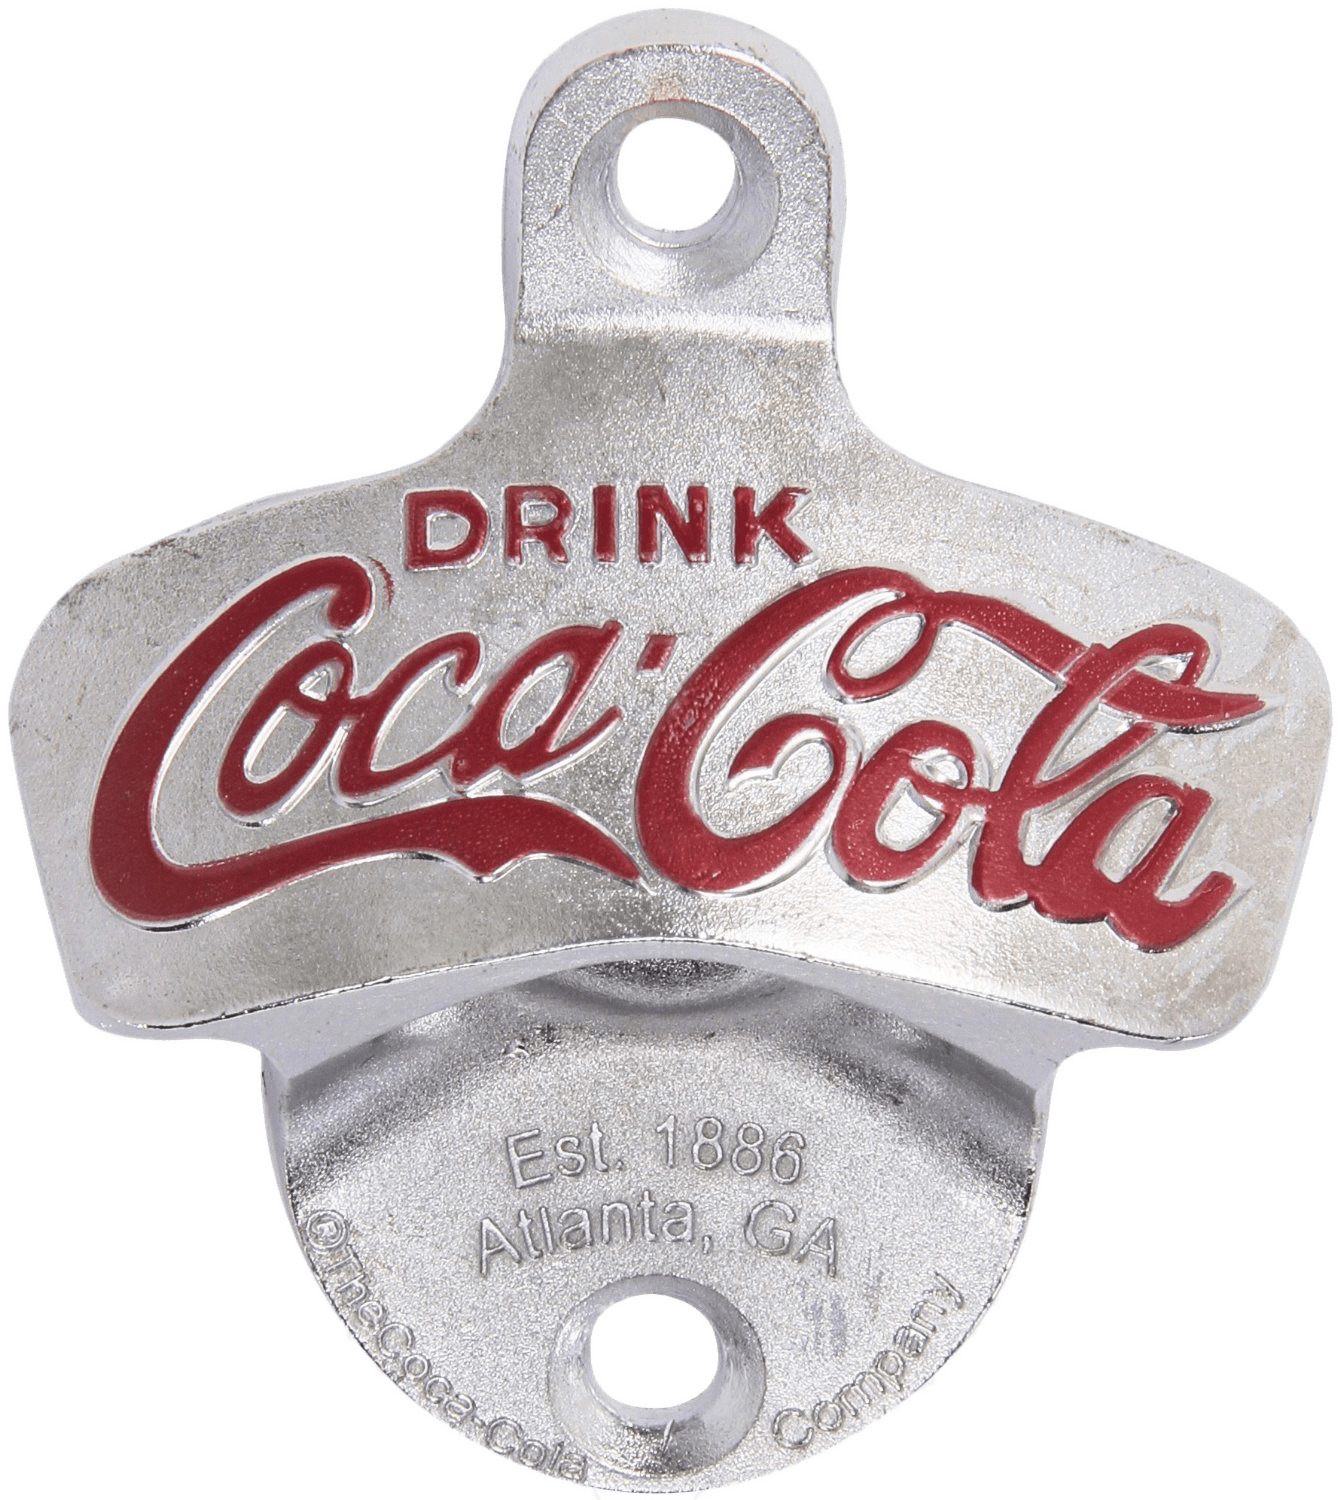 Coca Cola Wall Mount Bottle Opener icons